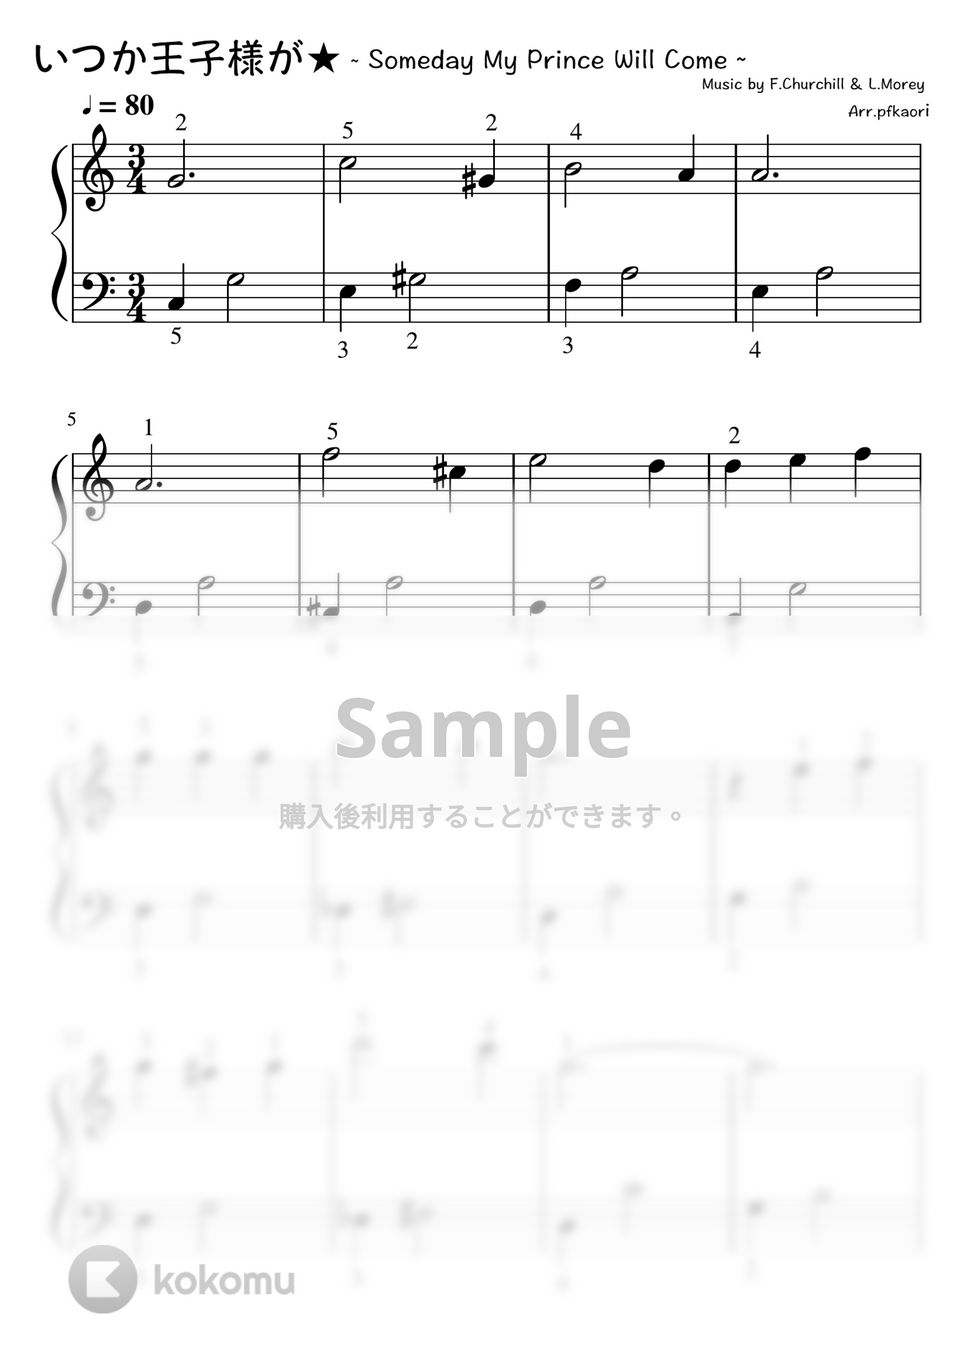 フランクチャーチル - いつか王子様が (Cdur・ピアノソロ入門〜初級・指番号) by pfkaori